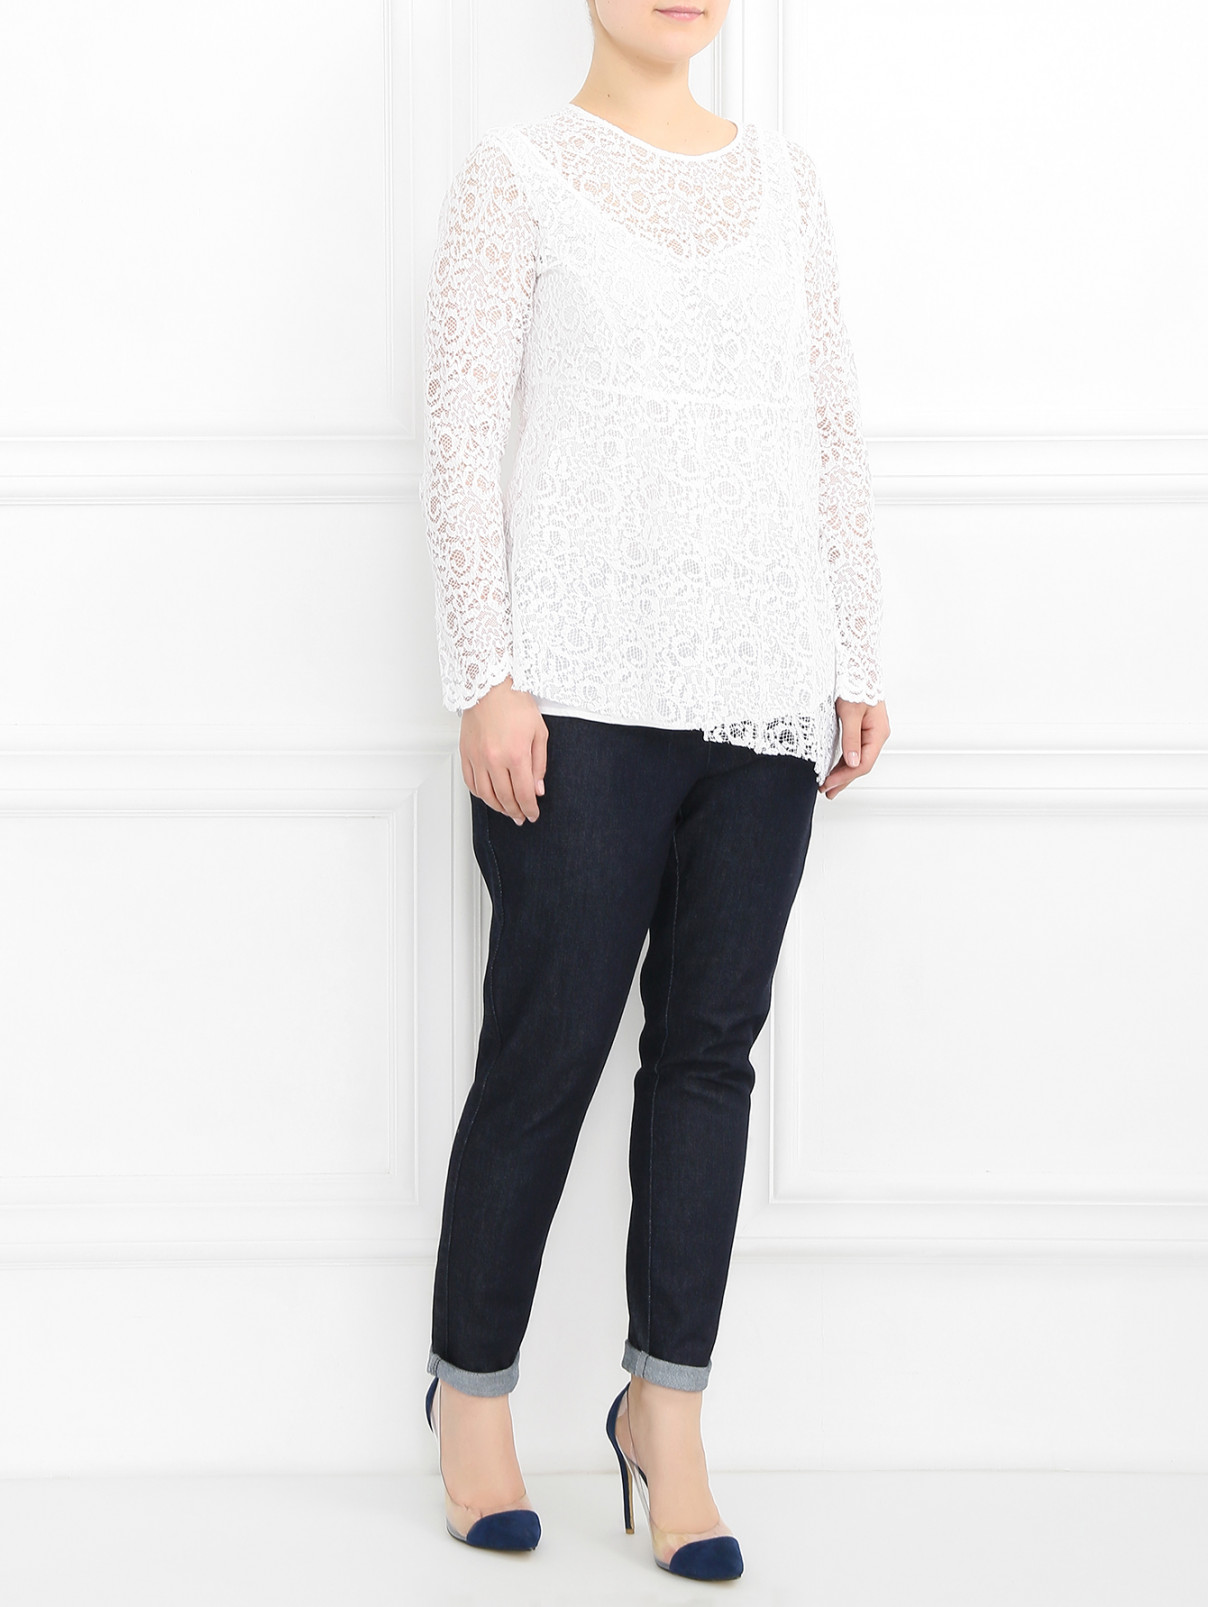 Блуза из кружева Marina Rinaldi  –  Модель Общий вид  – Цвет:  Белый